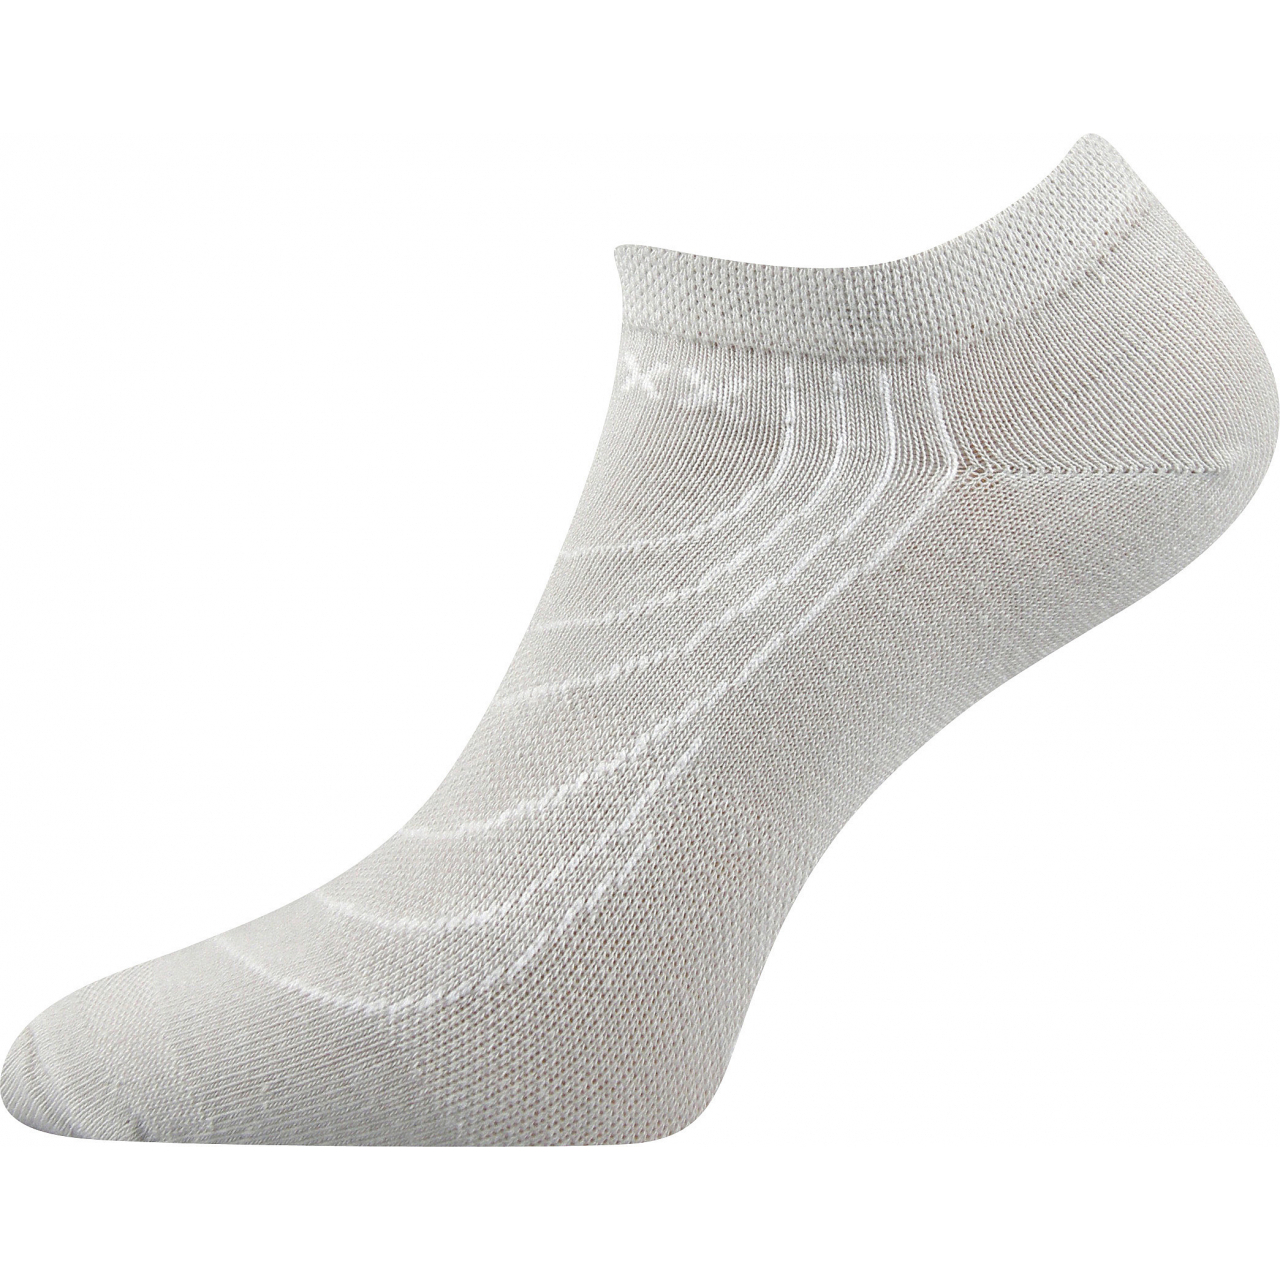 Ponožky nízké Voxx Rex - světle šedé, 43-46